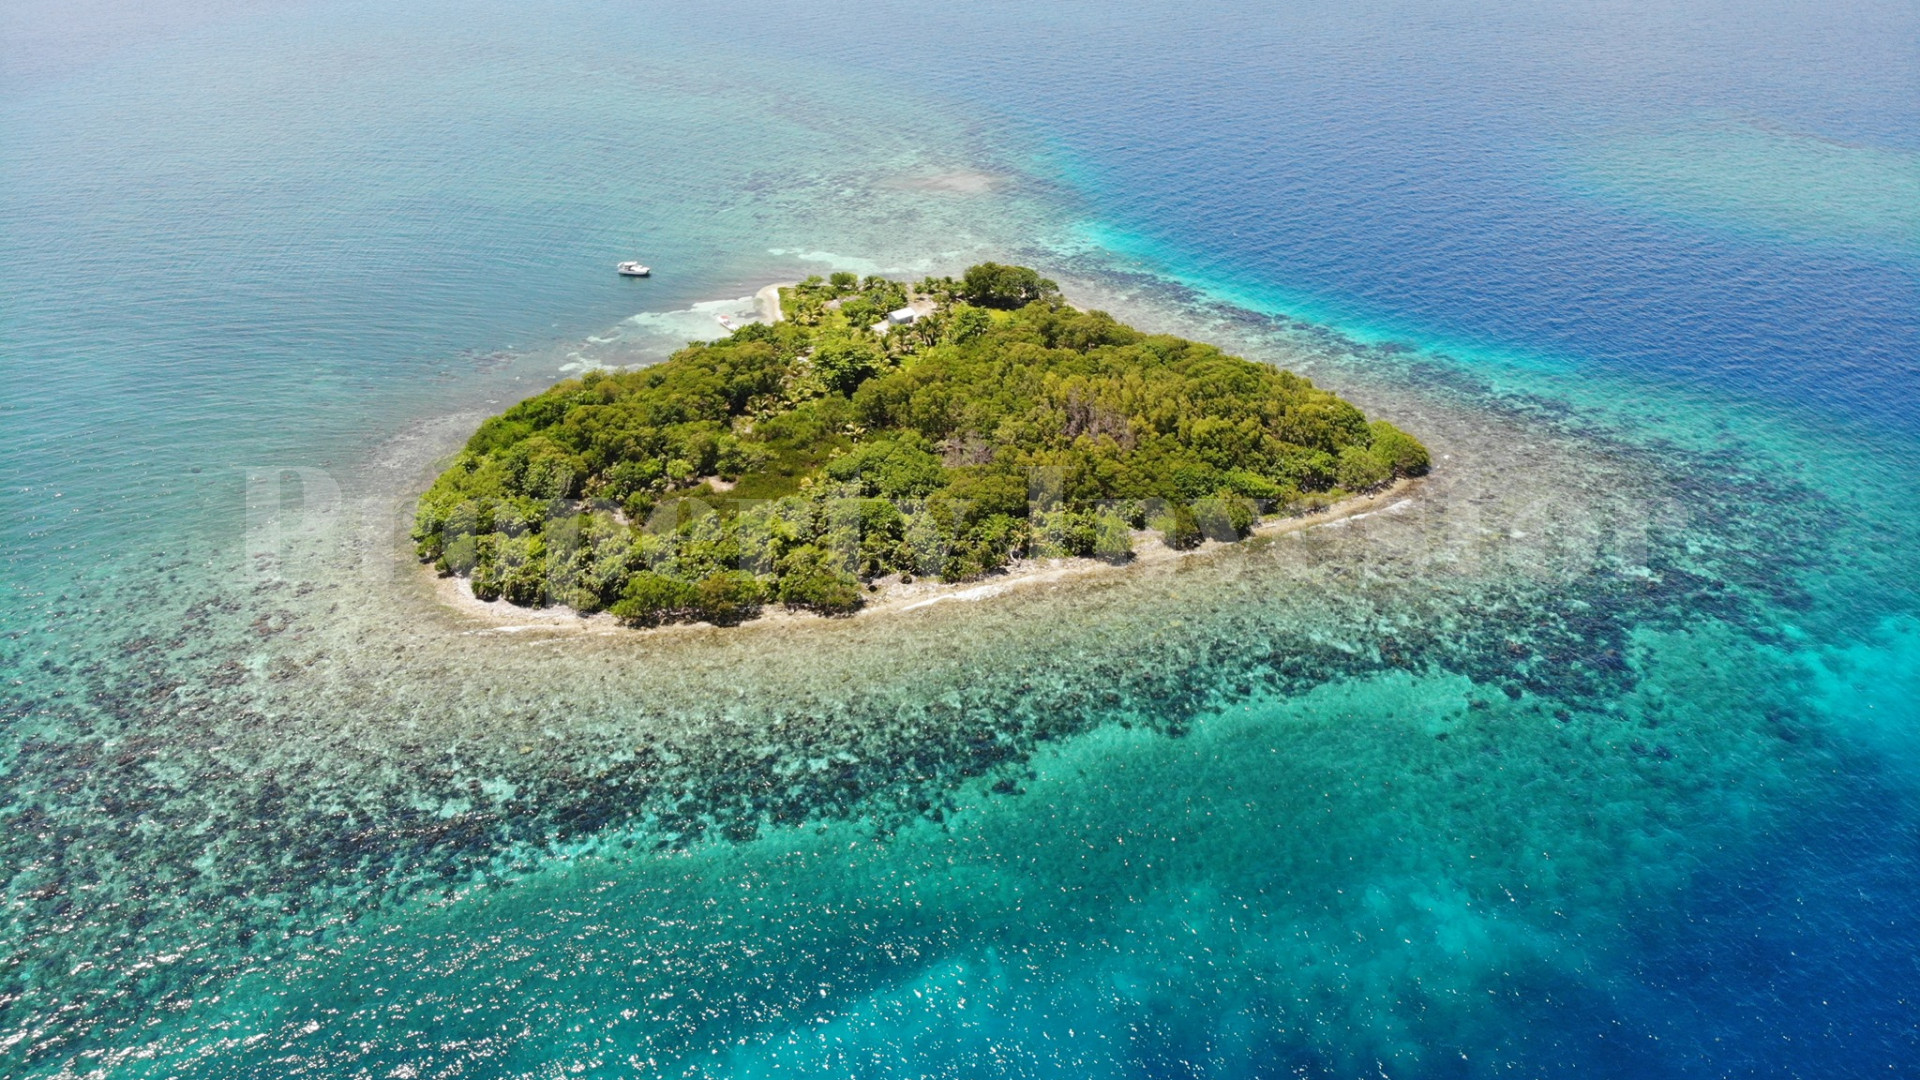 Изумительный частный коралловый остров 1,82 га недалеко от Placencia Village, Белиз